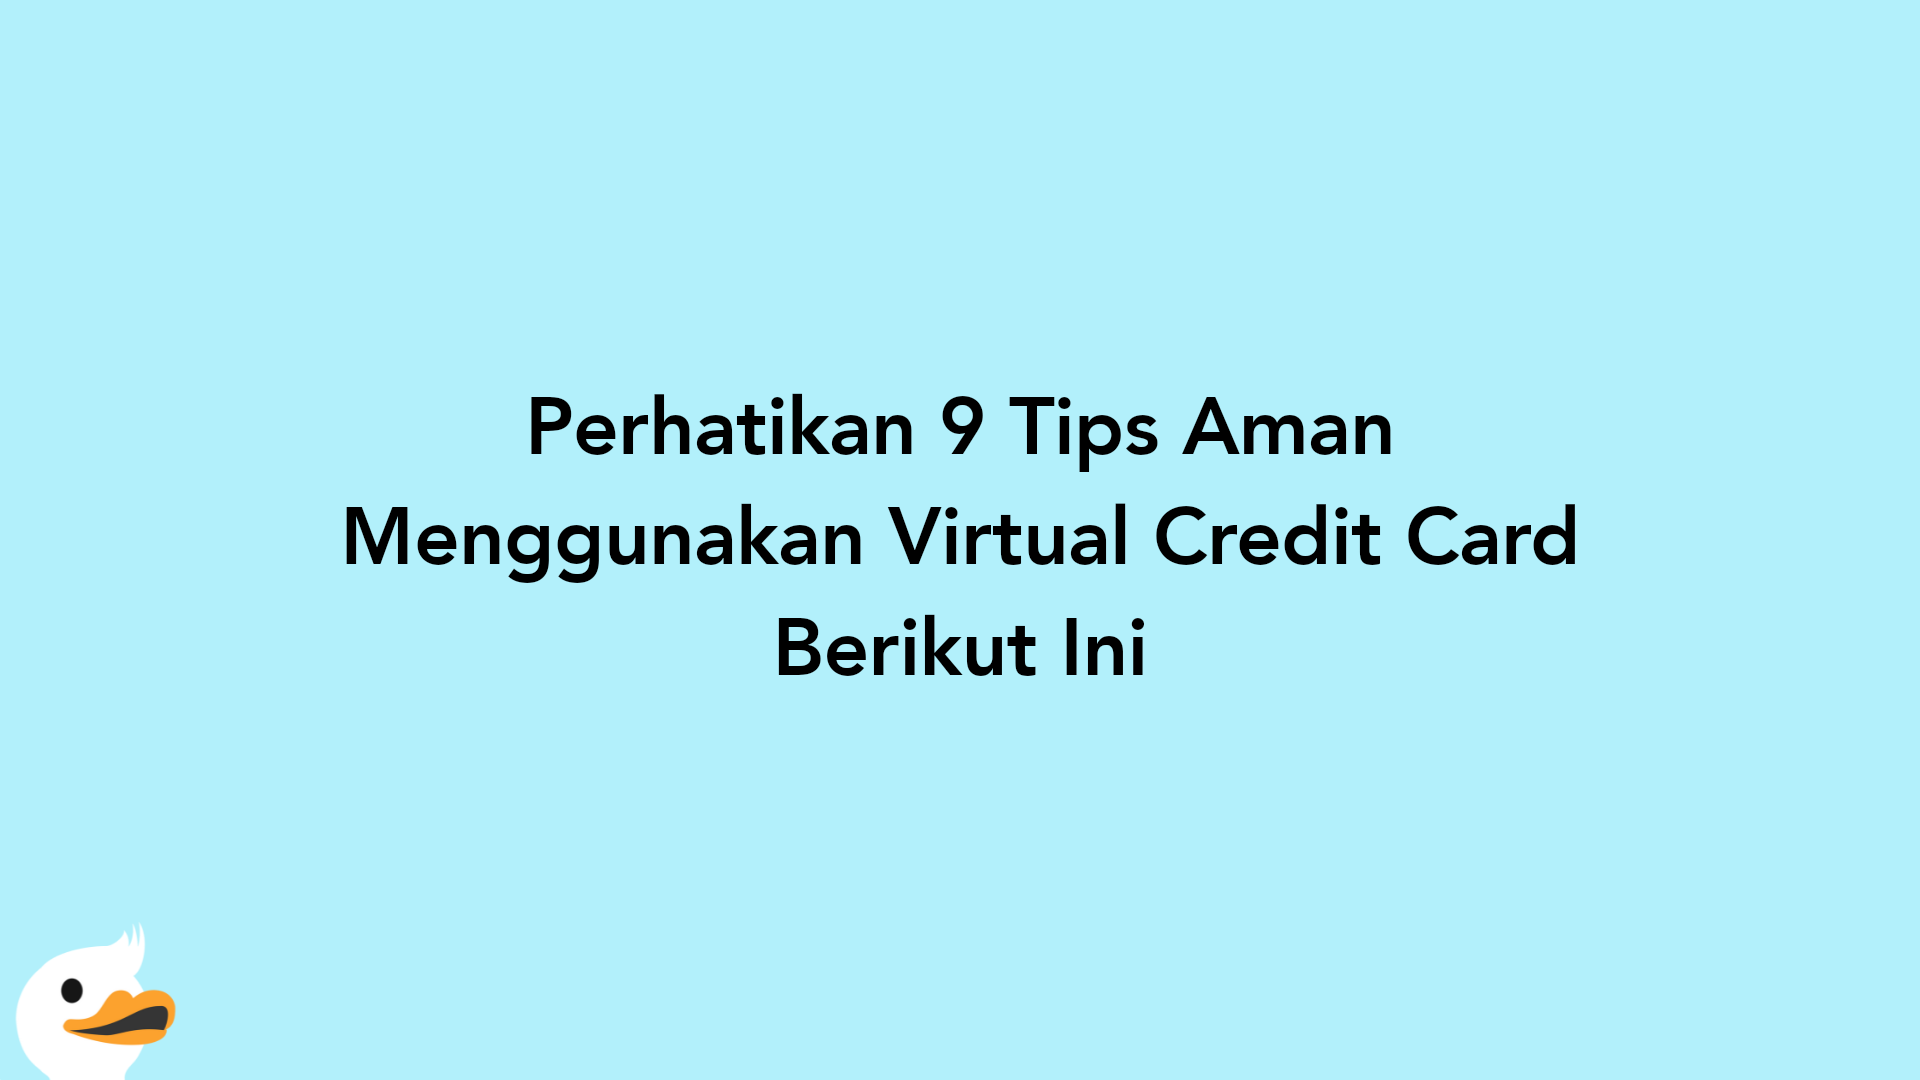 Perhatikan 9 Tips Aman Menggunakan Virtual Credit Card Berikut Ini